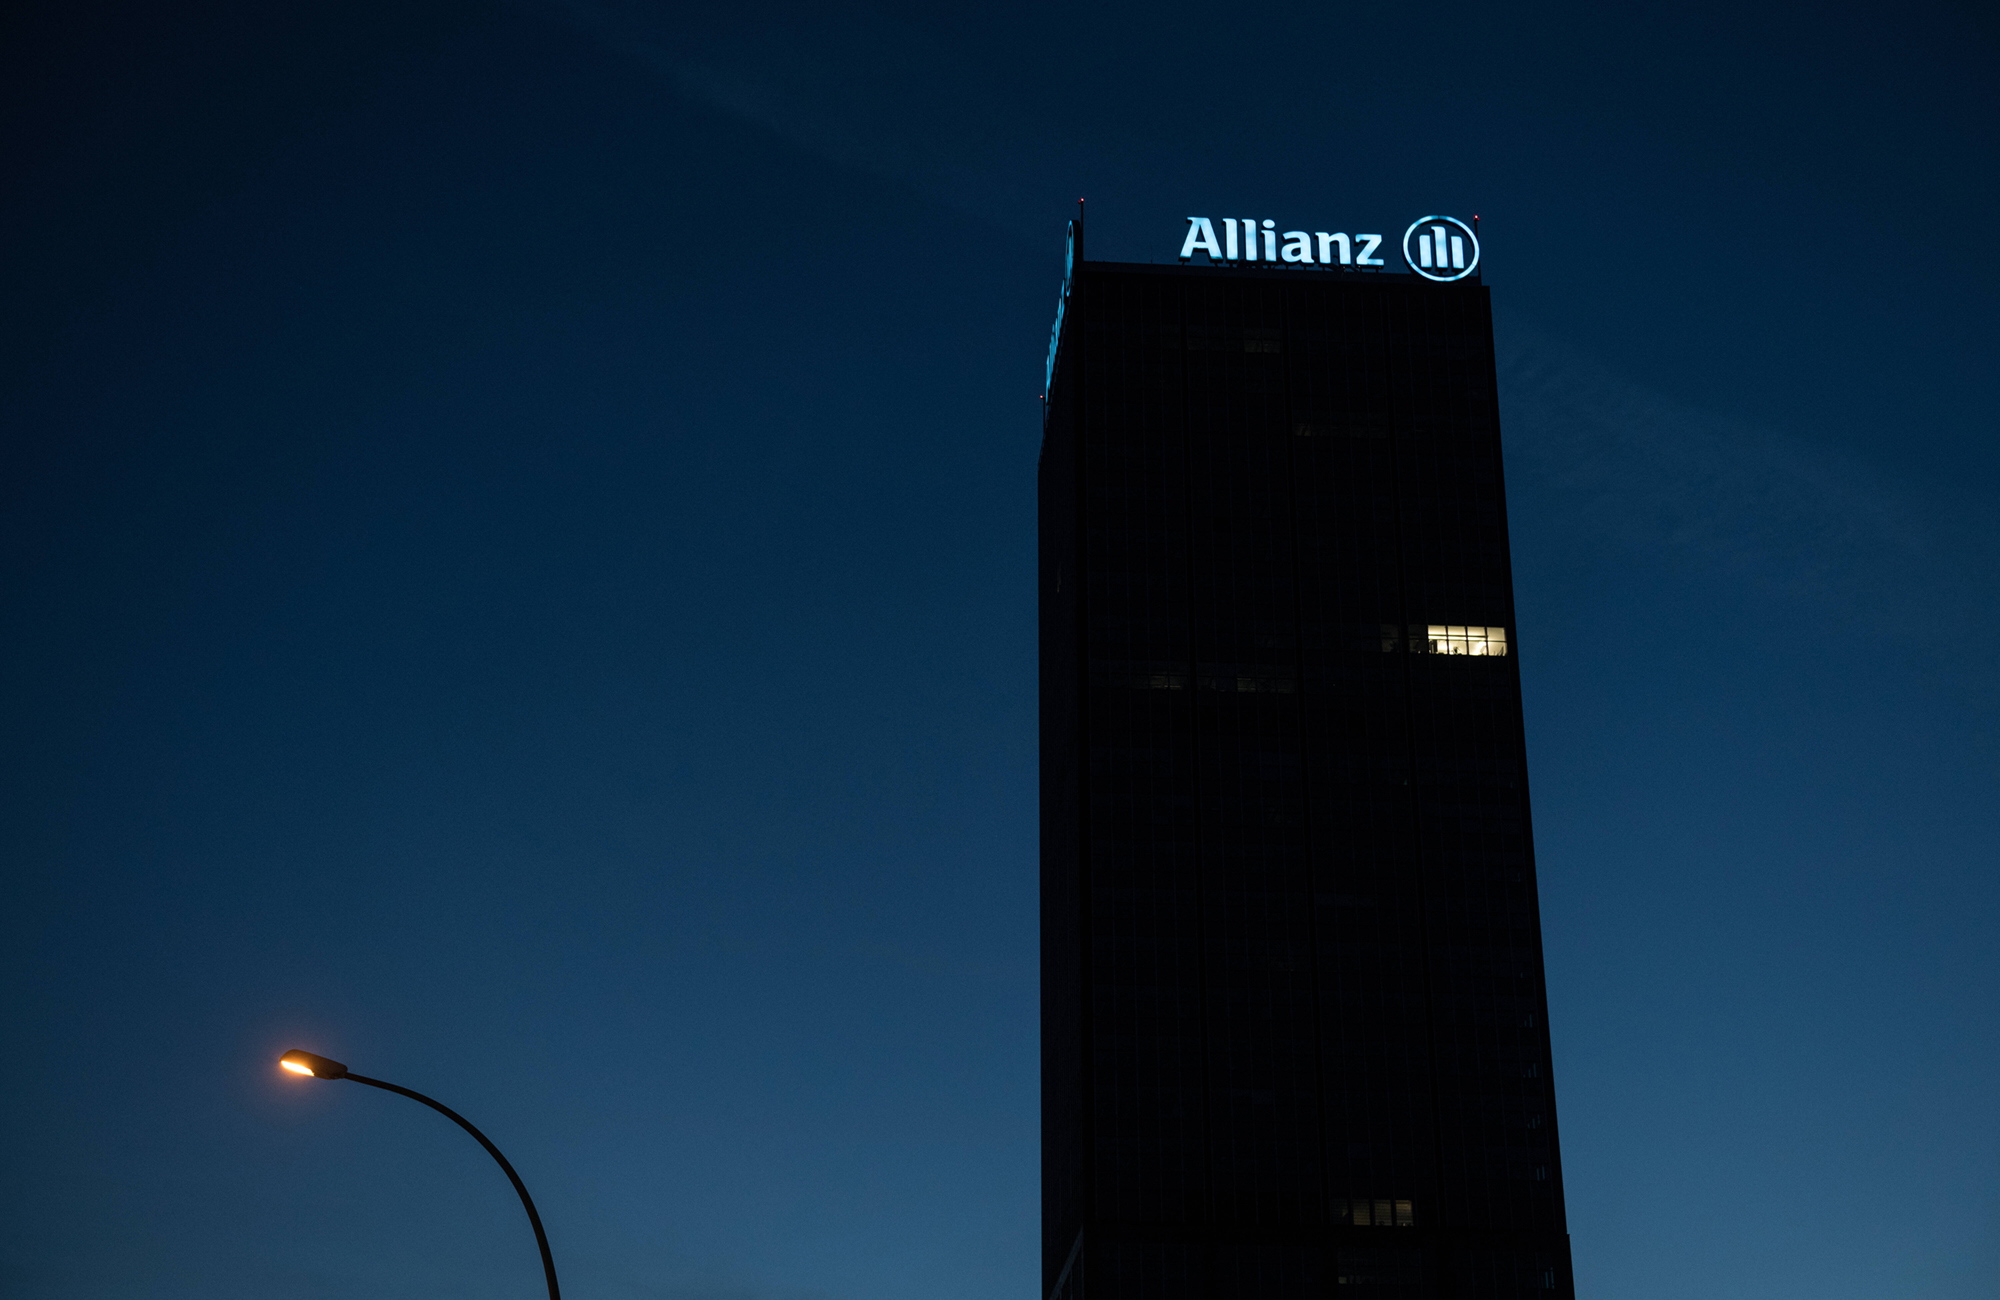 Die Allianz IAMC will der verlässlichste Anbieter von Vermögensverwaltungsprodukten und -dienstleistungen ausländischer Versicherungen in China werden (im Bild: Allianz-Gebäude in Berlin). Foto: IMAGO / Bildgehege